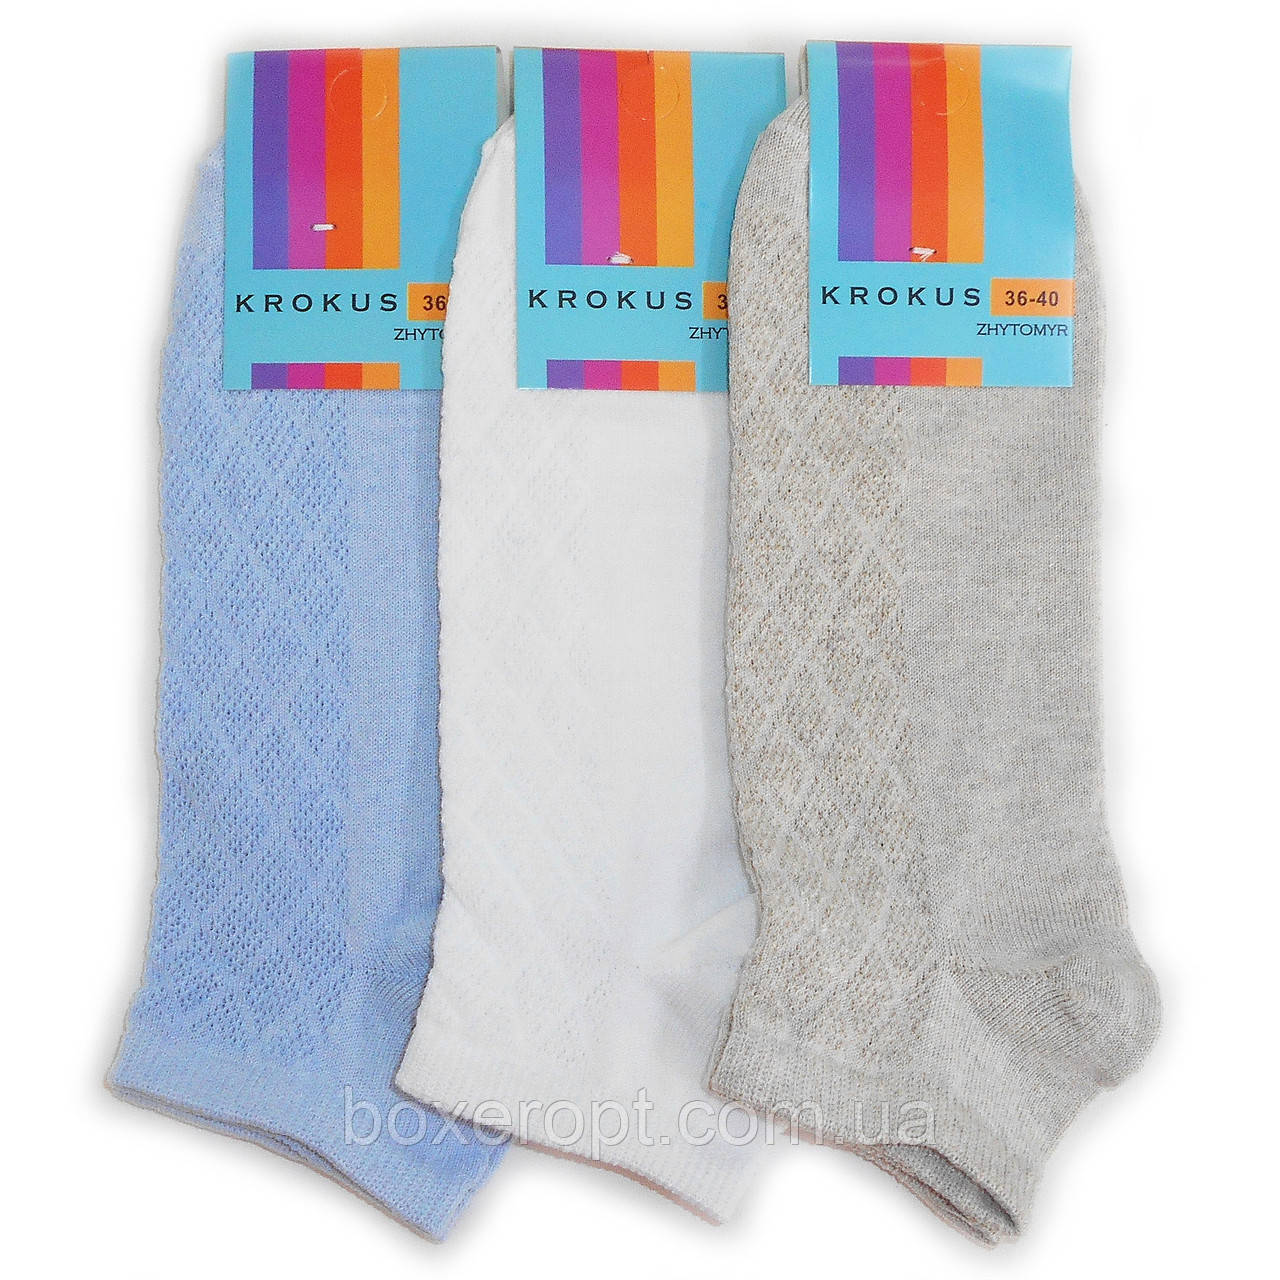 Жіночі короткі шкарпетки з сіточкою Krokus - 10.00 грн./пара (світле асорті)